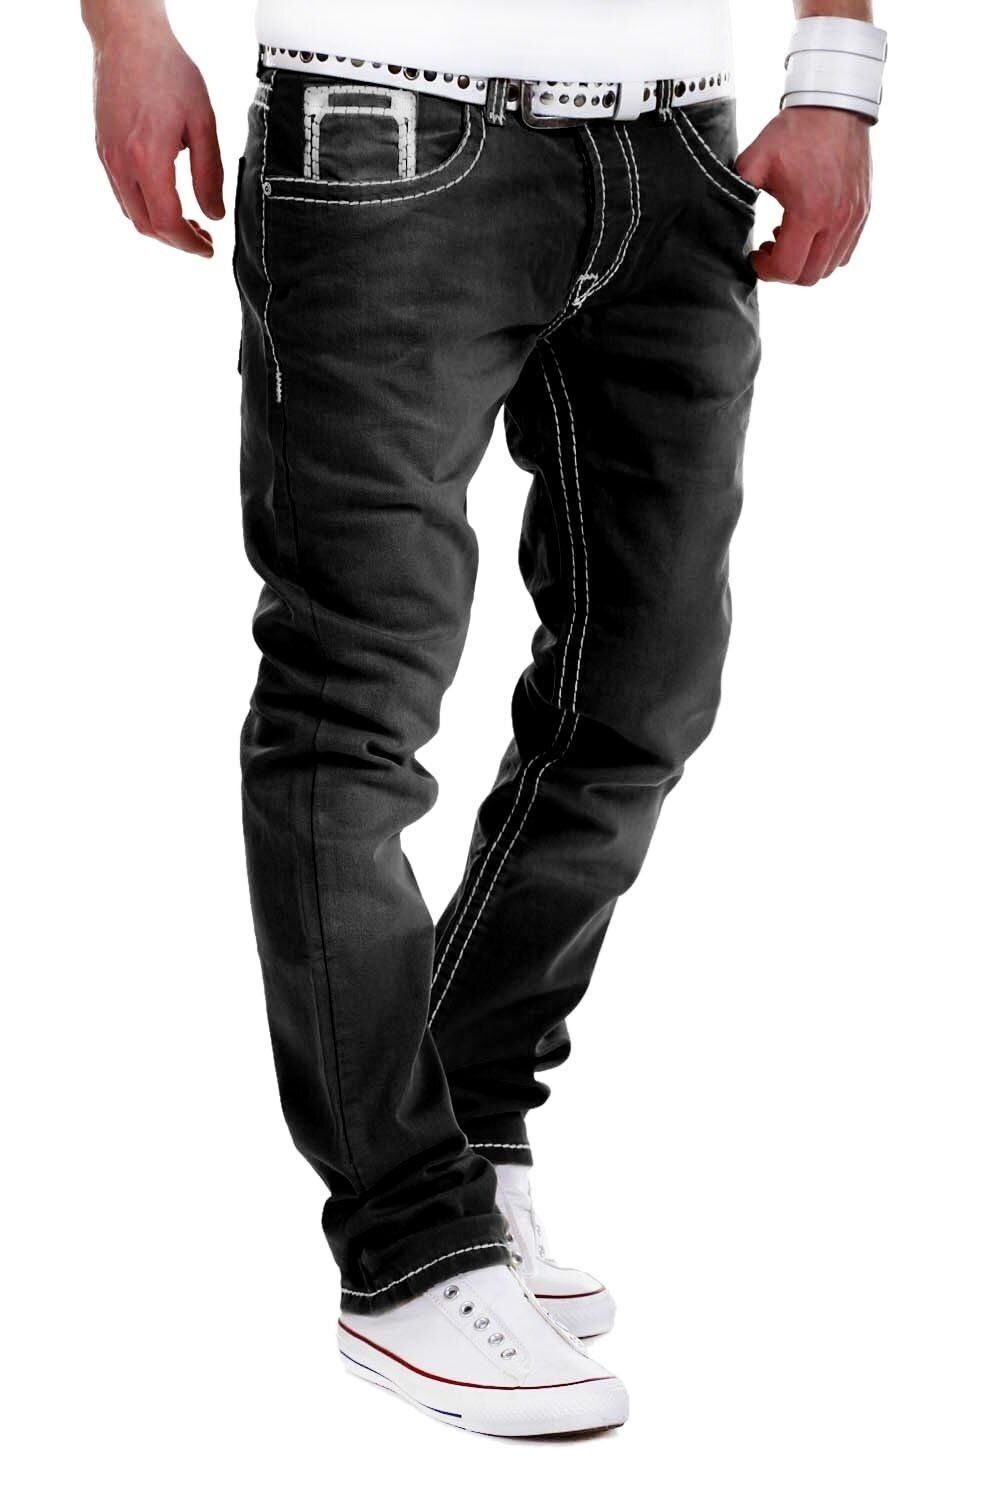 behype Bequeme Jeans Stitch mit dicken Kontrastnähten schwarz